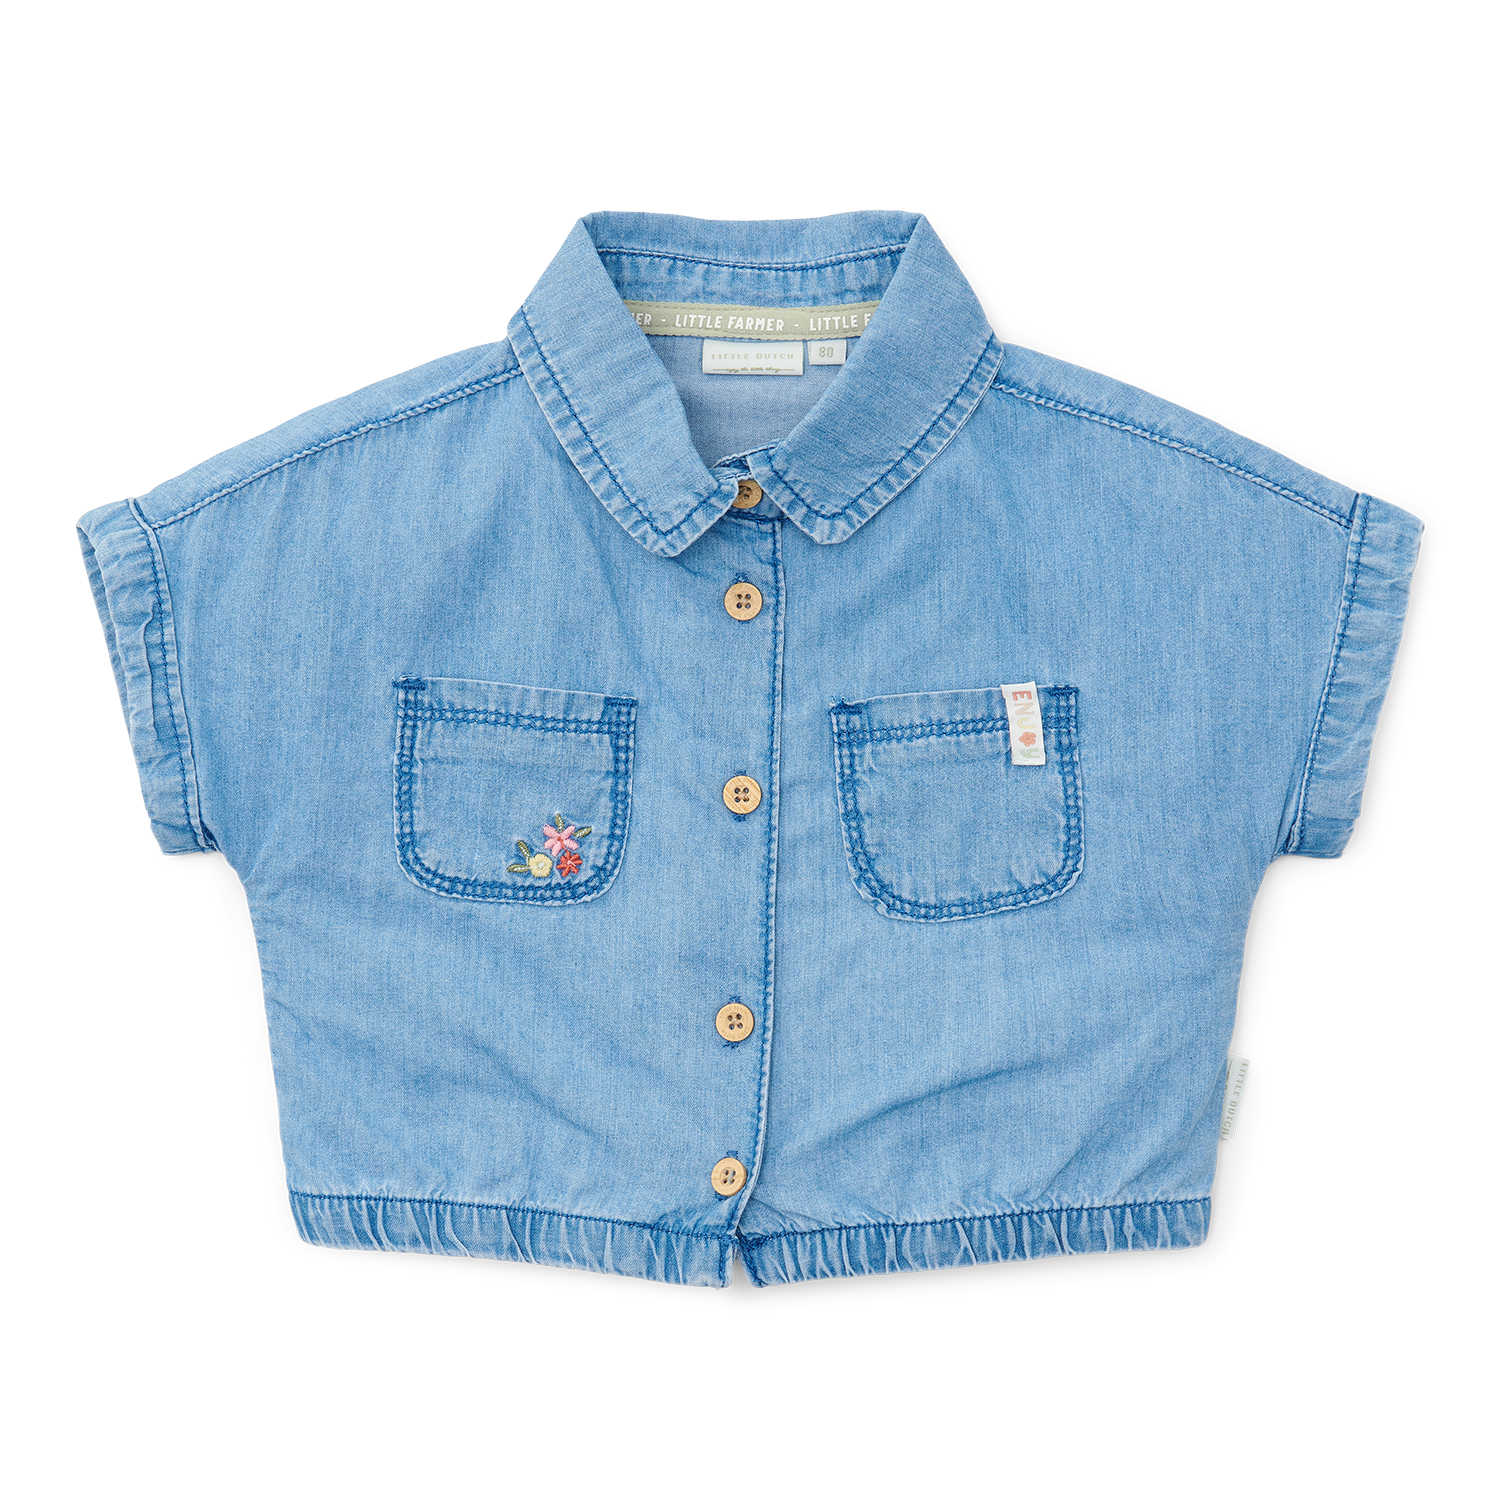 T-Shirt / Bluse Denim Little Farm jeans (Gr. 74)